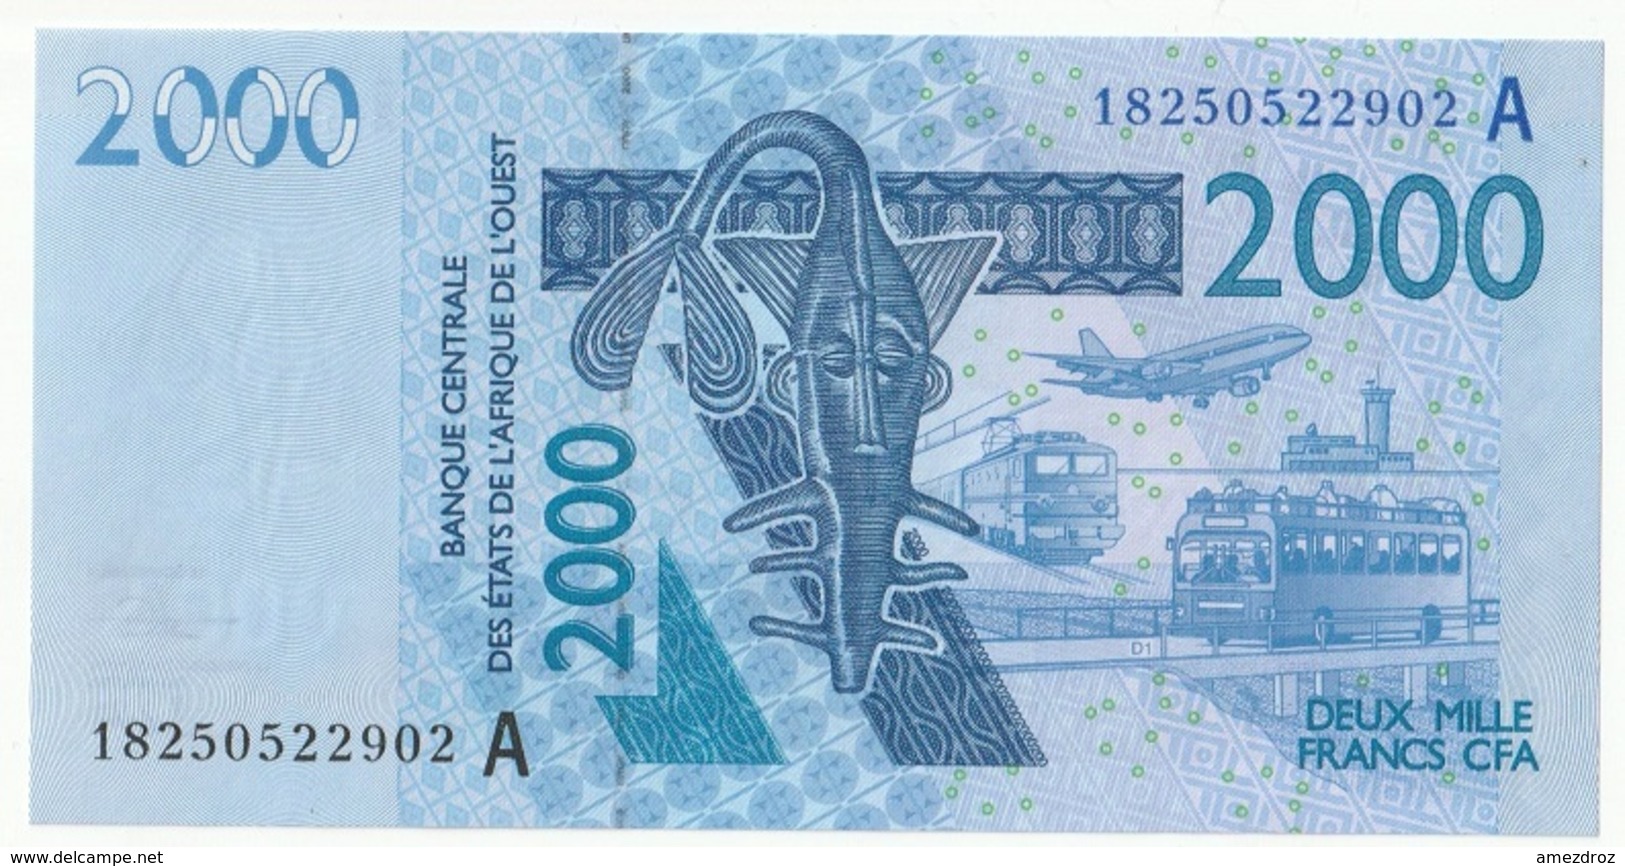 Billet De 2000 Francs CFA XOF Non Circulé Afrique De L'Ouest Origine Cote D'Ivoire - Costa De Marfil